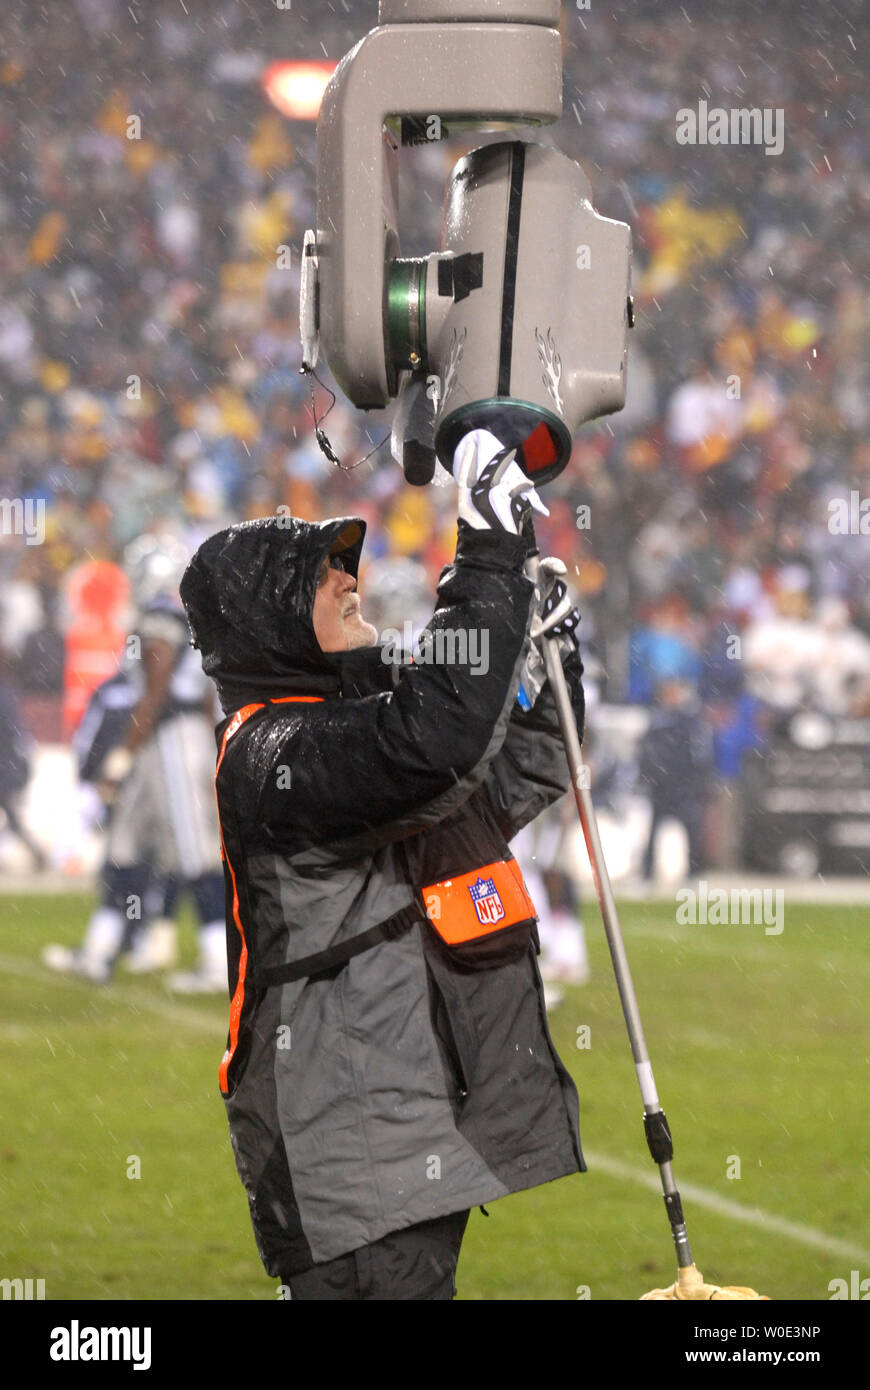 Un technicien Films NFL off nettoie les lese du ciel cam comme de fortes précipitations pendant la Redskins de Washington joue aux Cowboys de Dallas à FedEx Field à Landover, Maryland le 30 décembre 2007. (UPI Photo/Kevin Dietsch) Banque D'Images